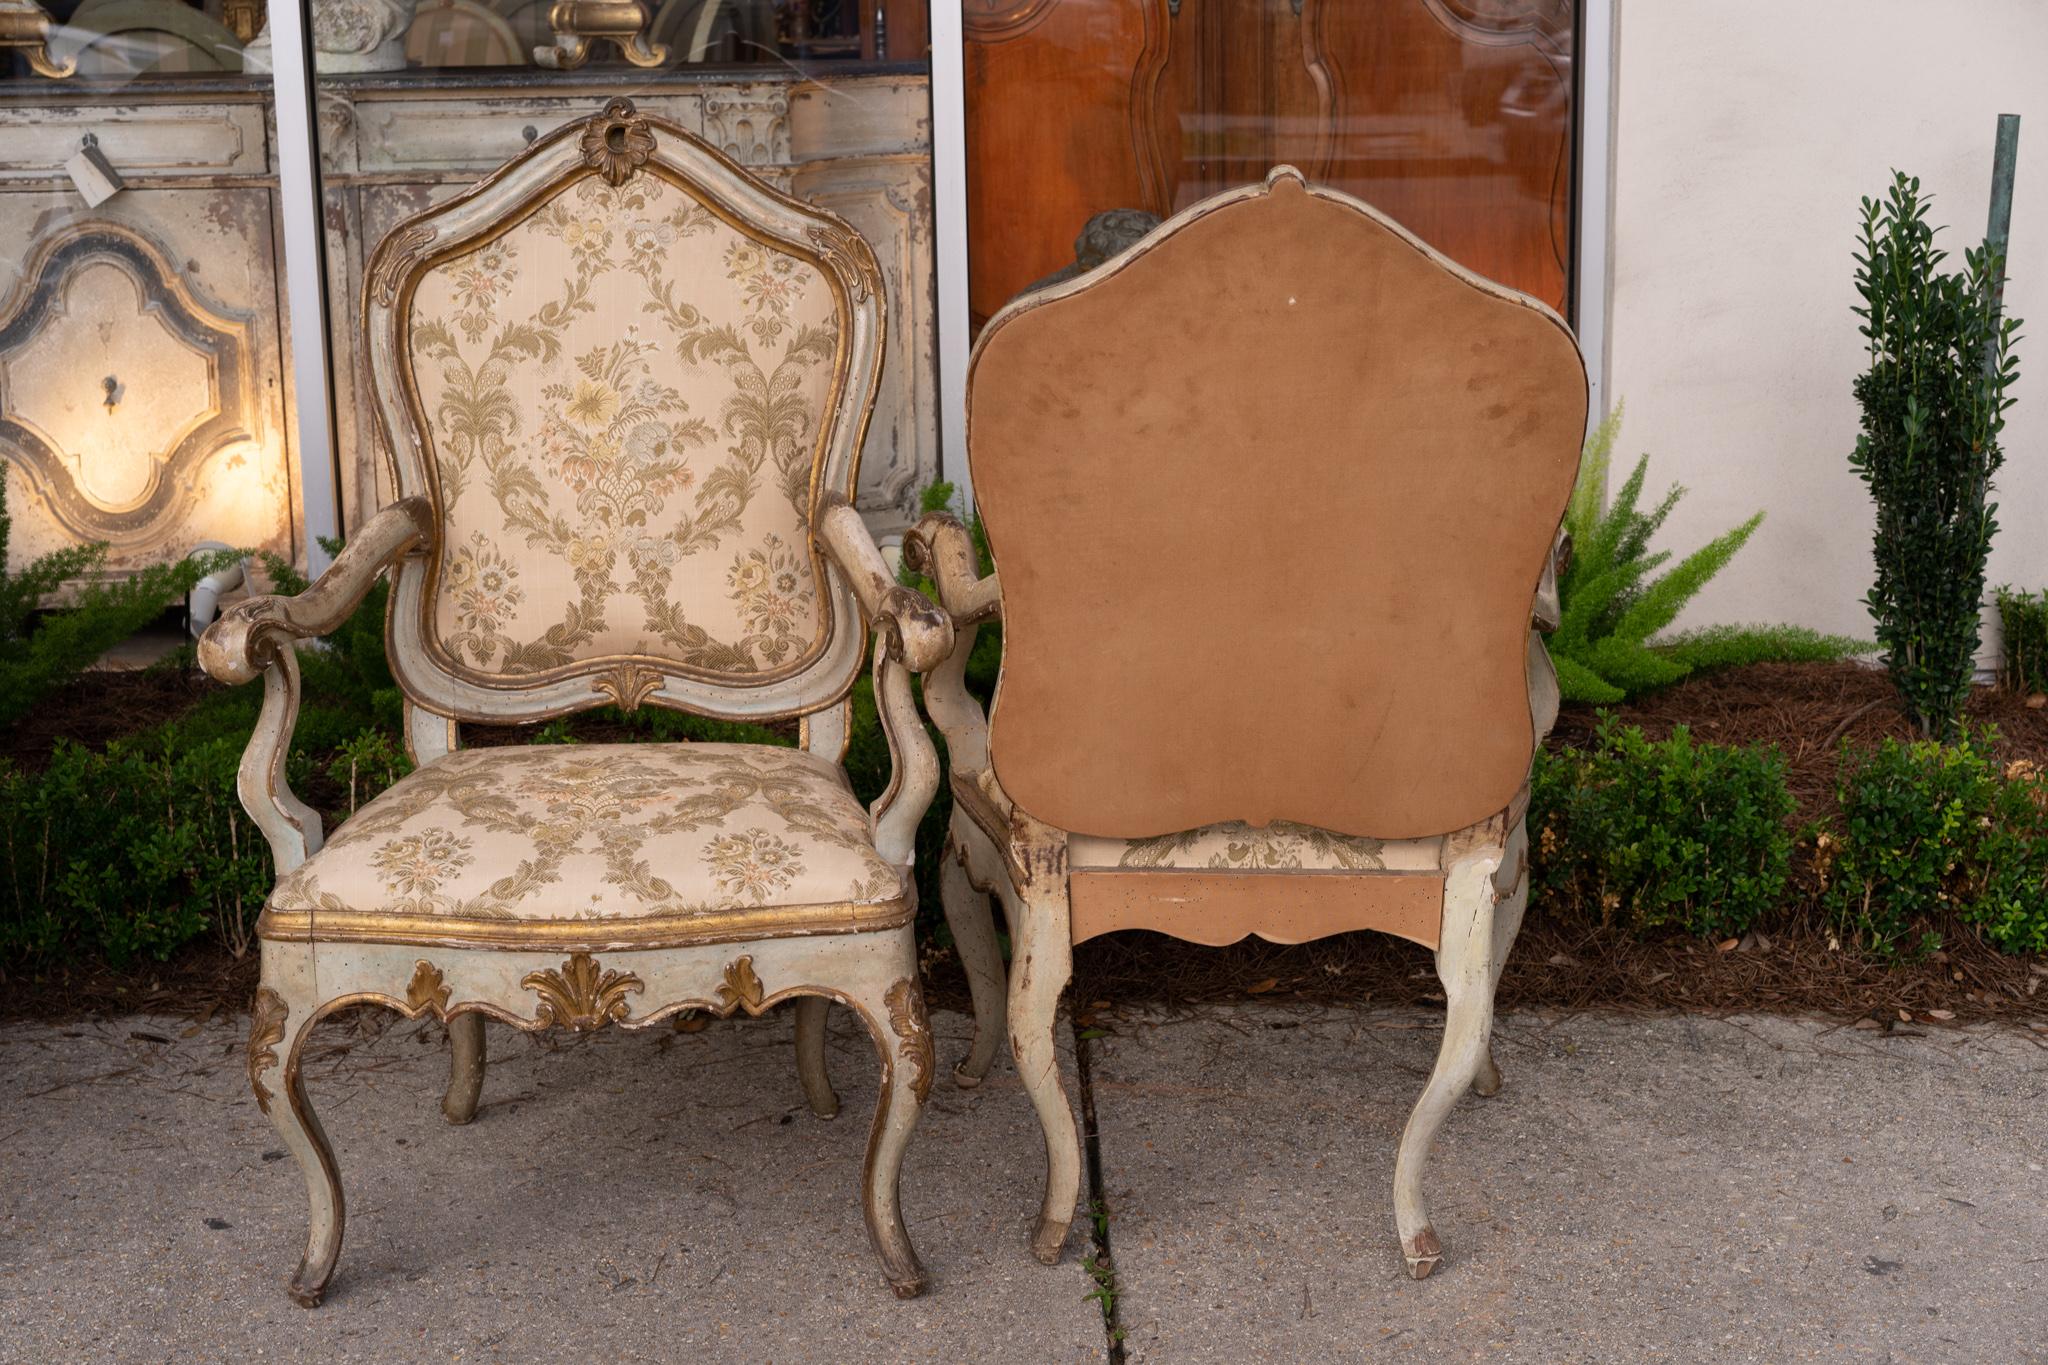 Bel ensemble de fauteuils vénitiens peints, dorés et sculptés avec des finitions originales.